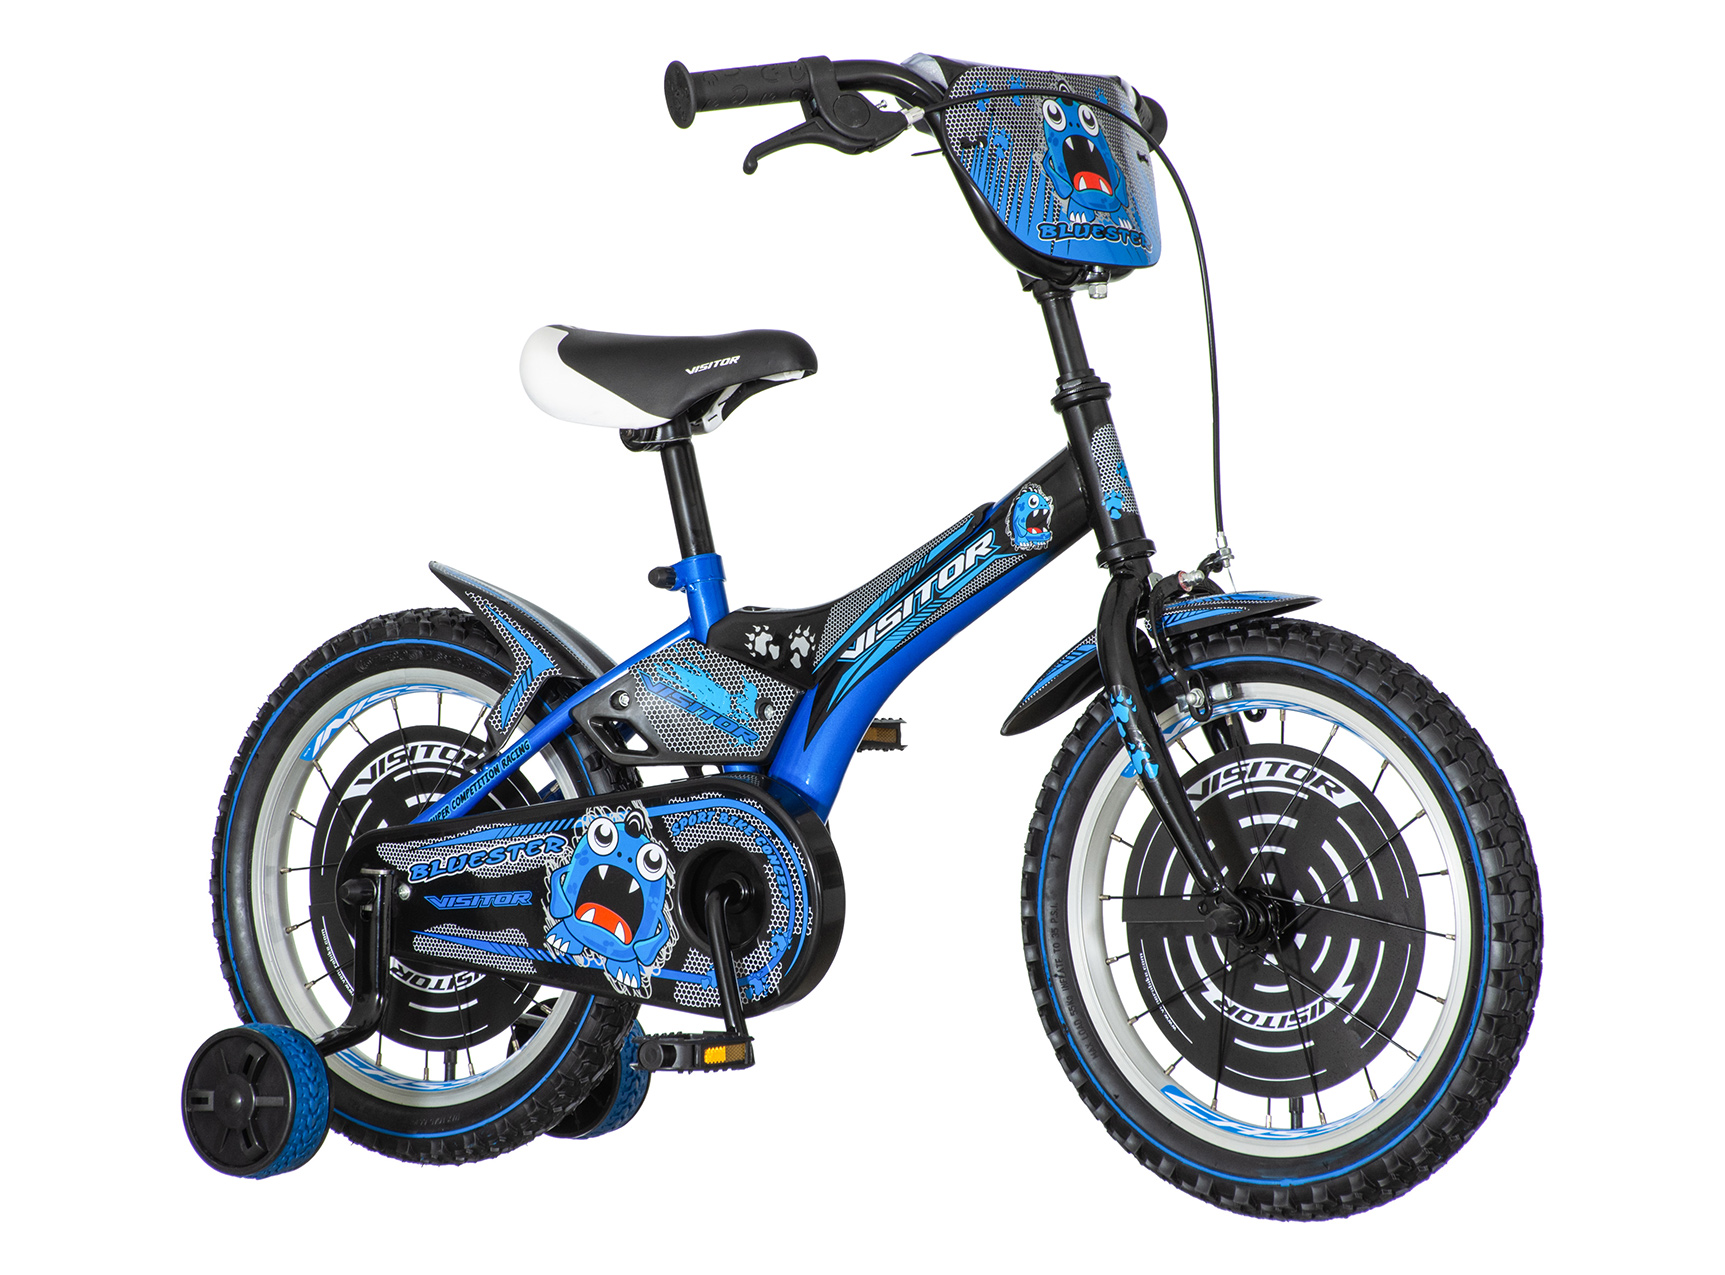 Plavo crna bluester muška dečija bicikla -blu160